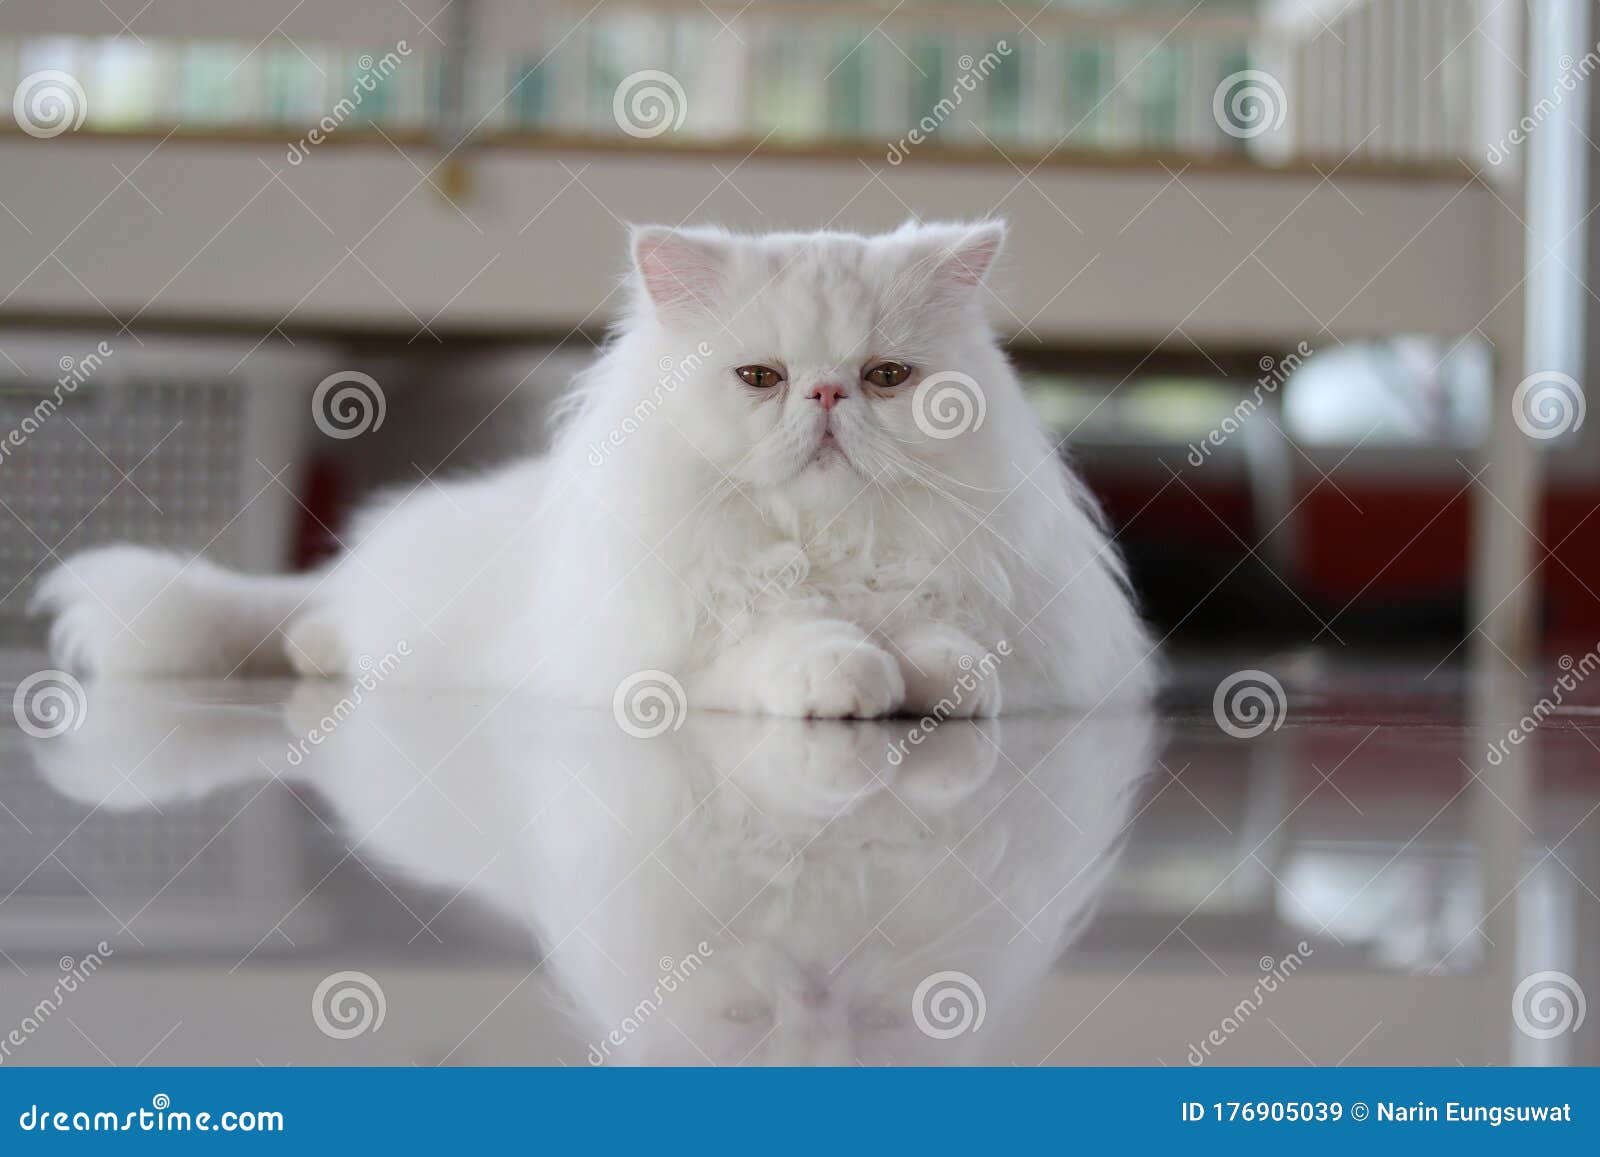 Persian pussy cat